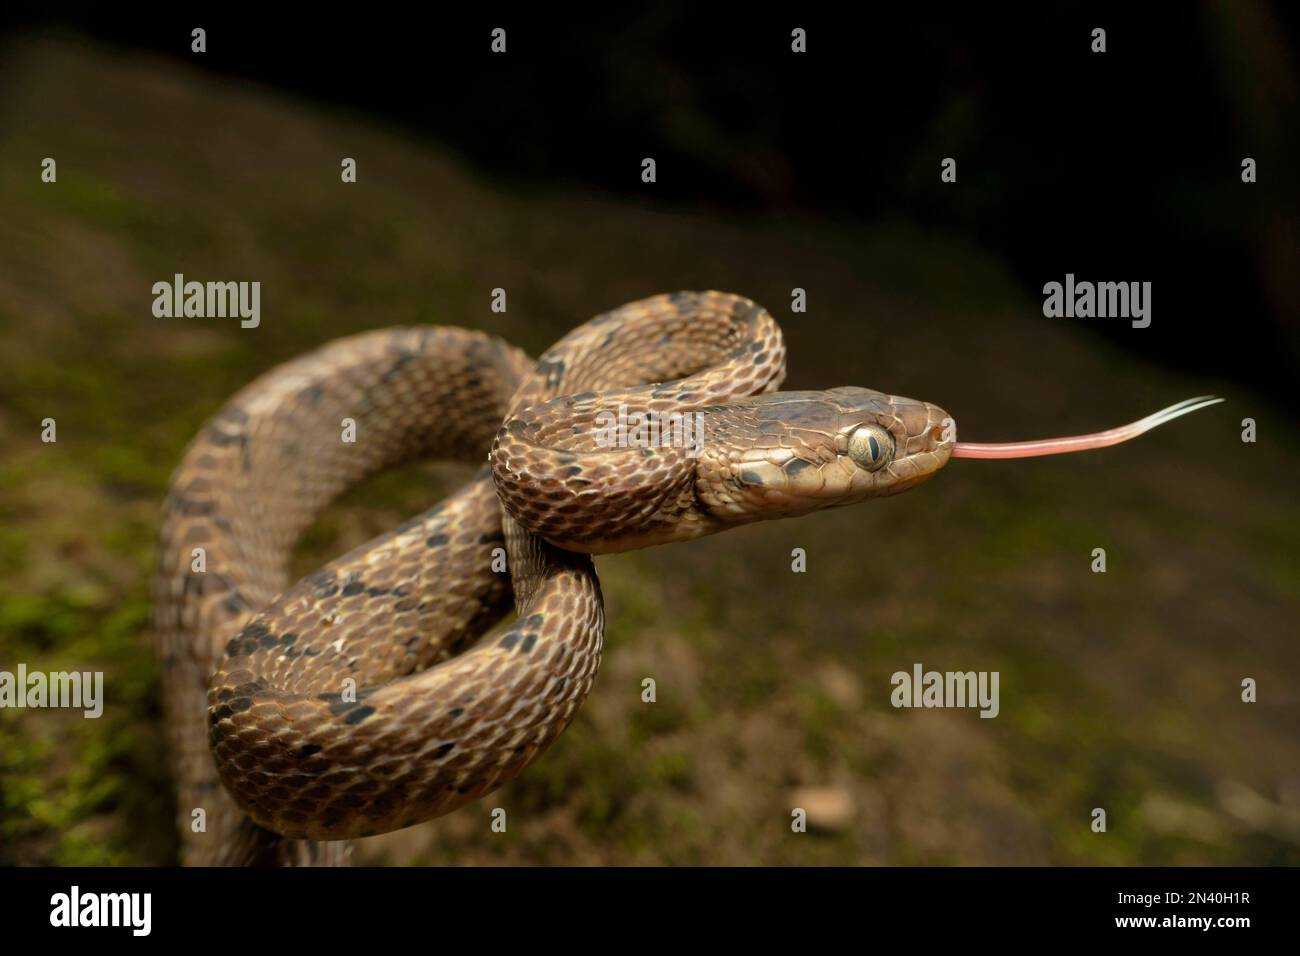 Boiga beddomei, communément connu sous le nom de serpent de Beddome s, est une espèce de serpent arrière-fanged dans la famille des Colubridae. L'espèce est endémique à la Weste Banque D'Images